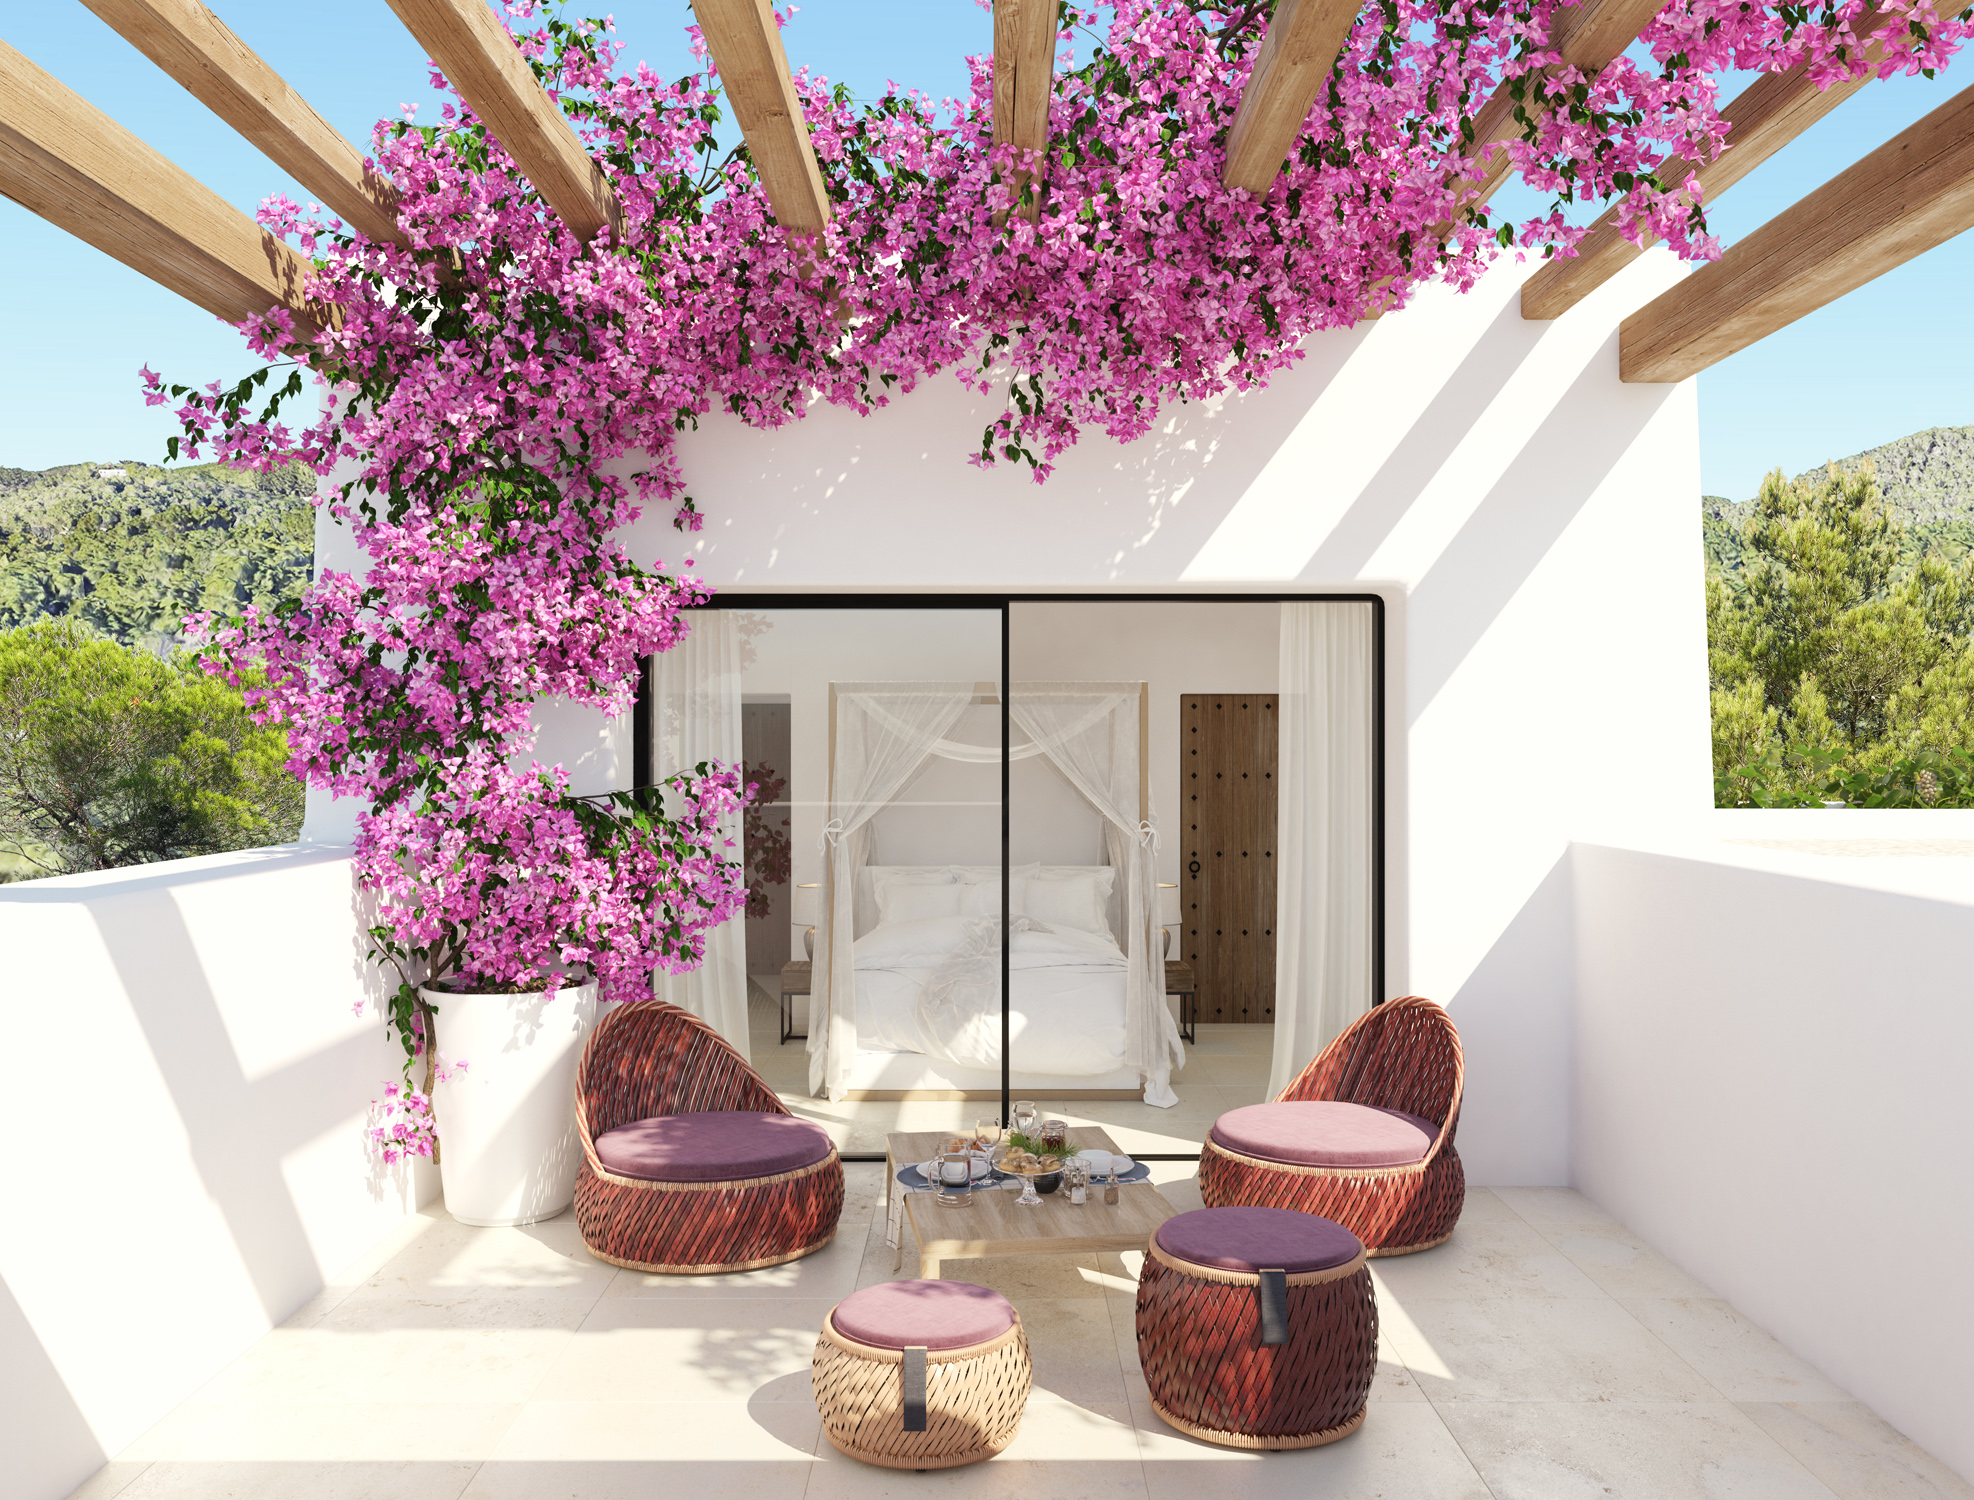 Outdoor living area of a contemporary villa in Ibiza